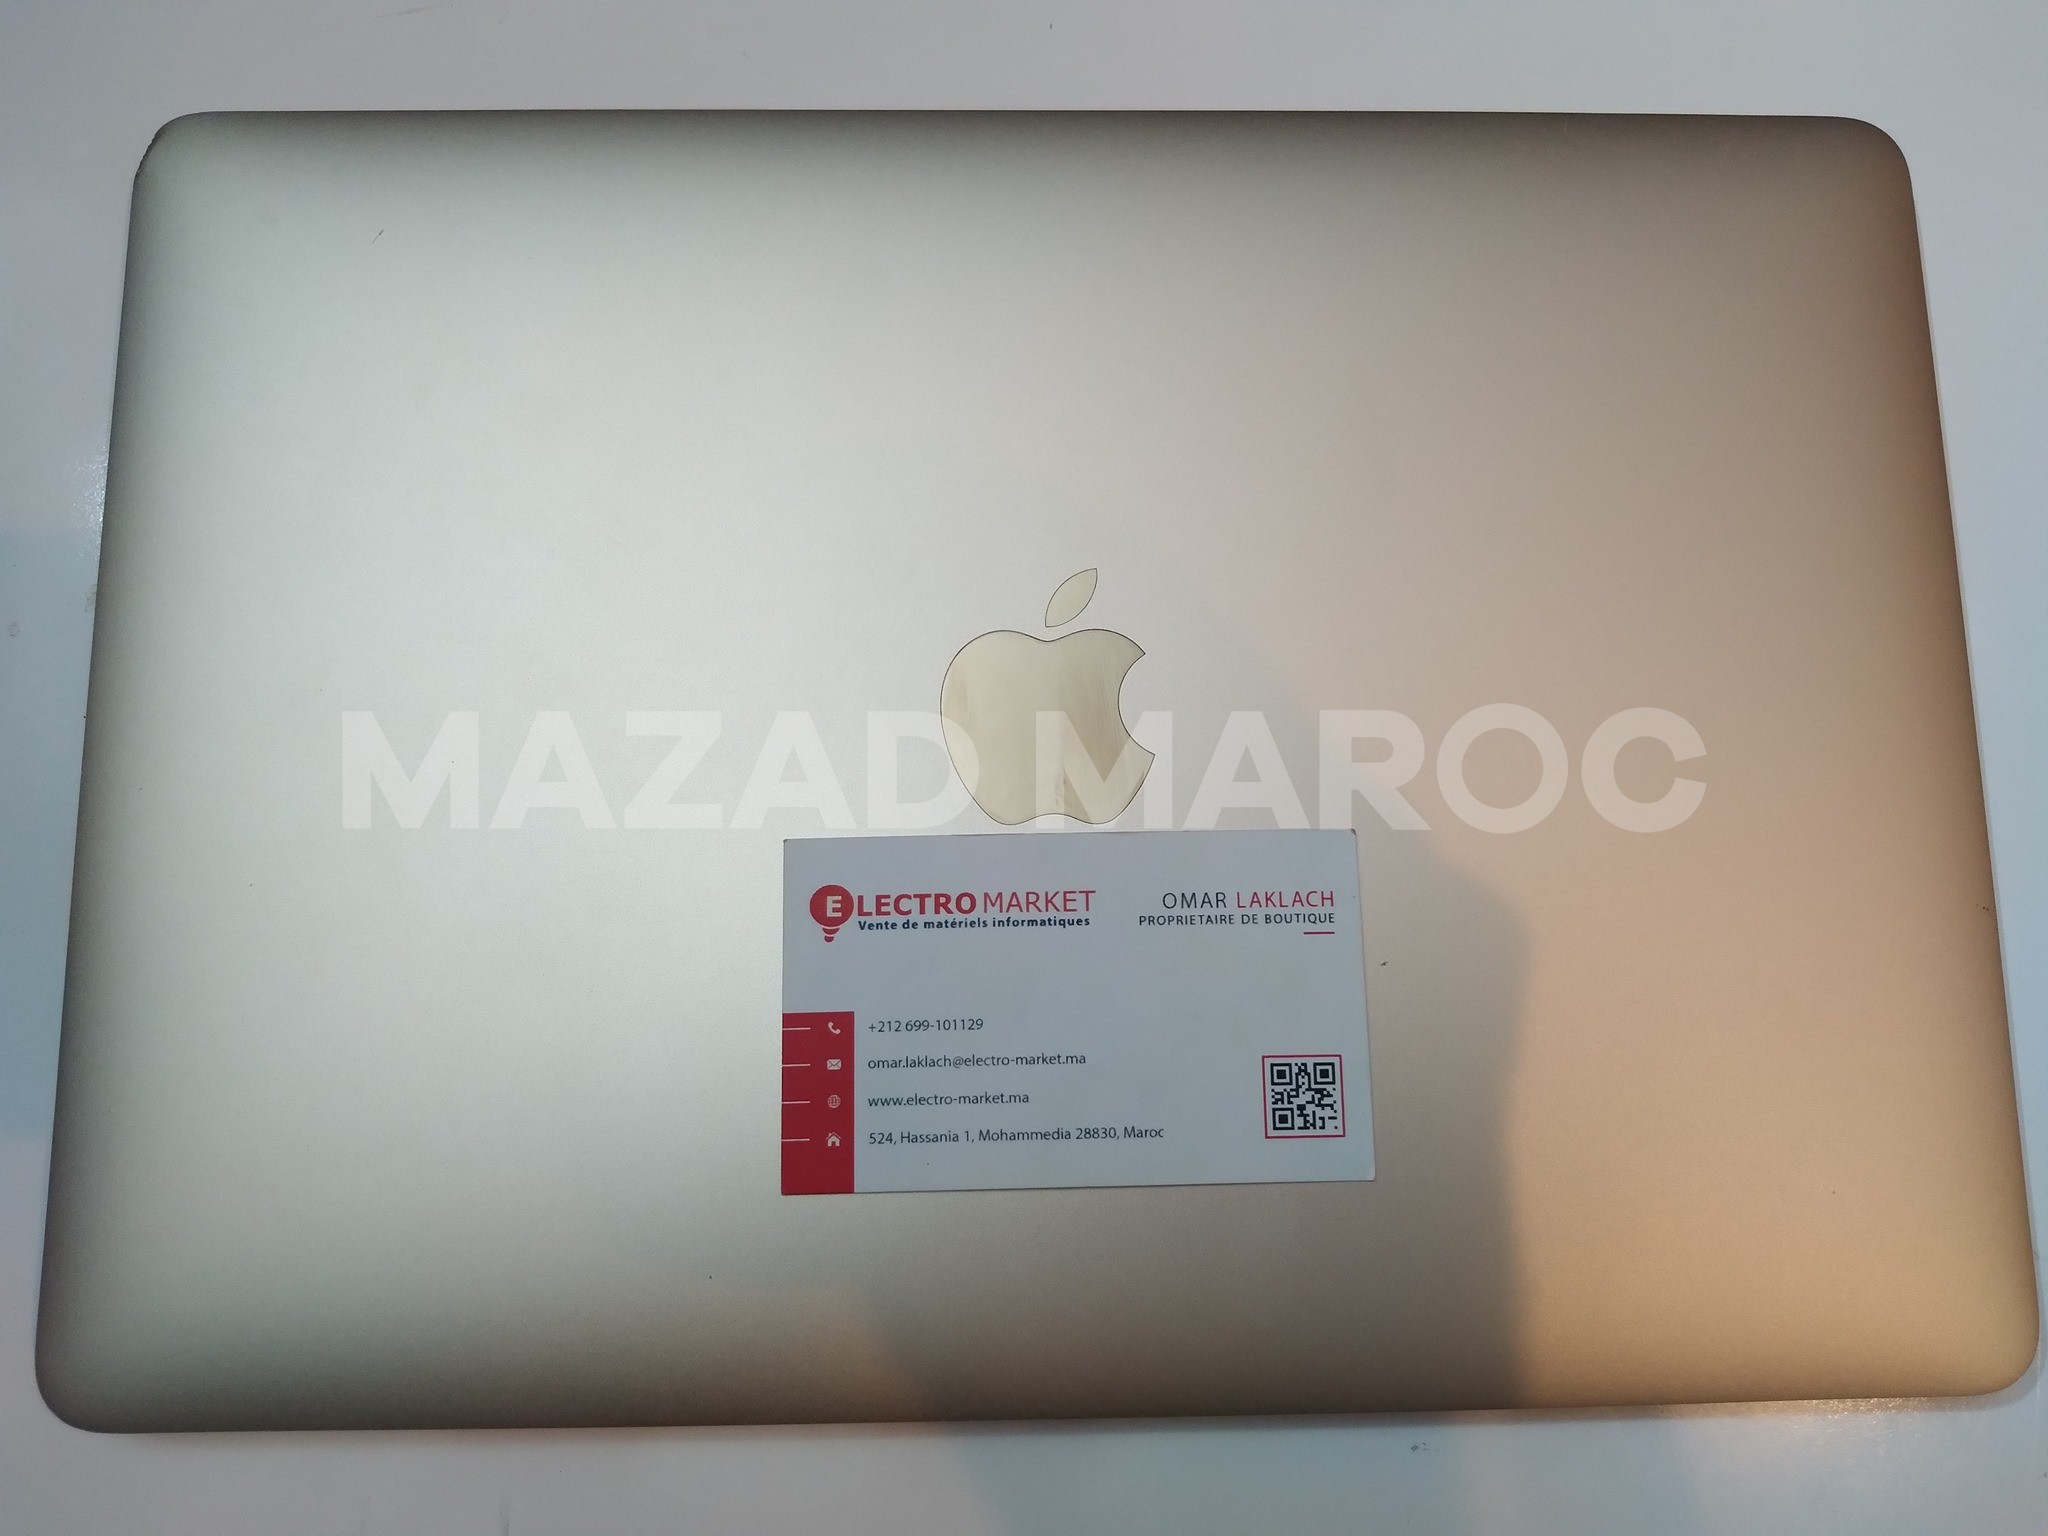 Apple MacBook 12 Pouces  2015